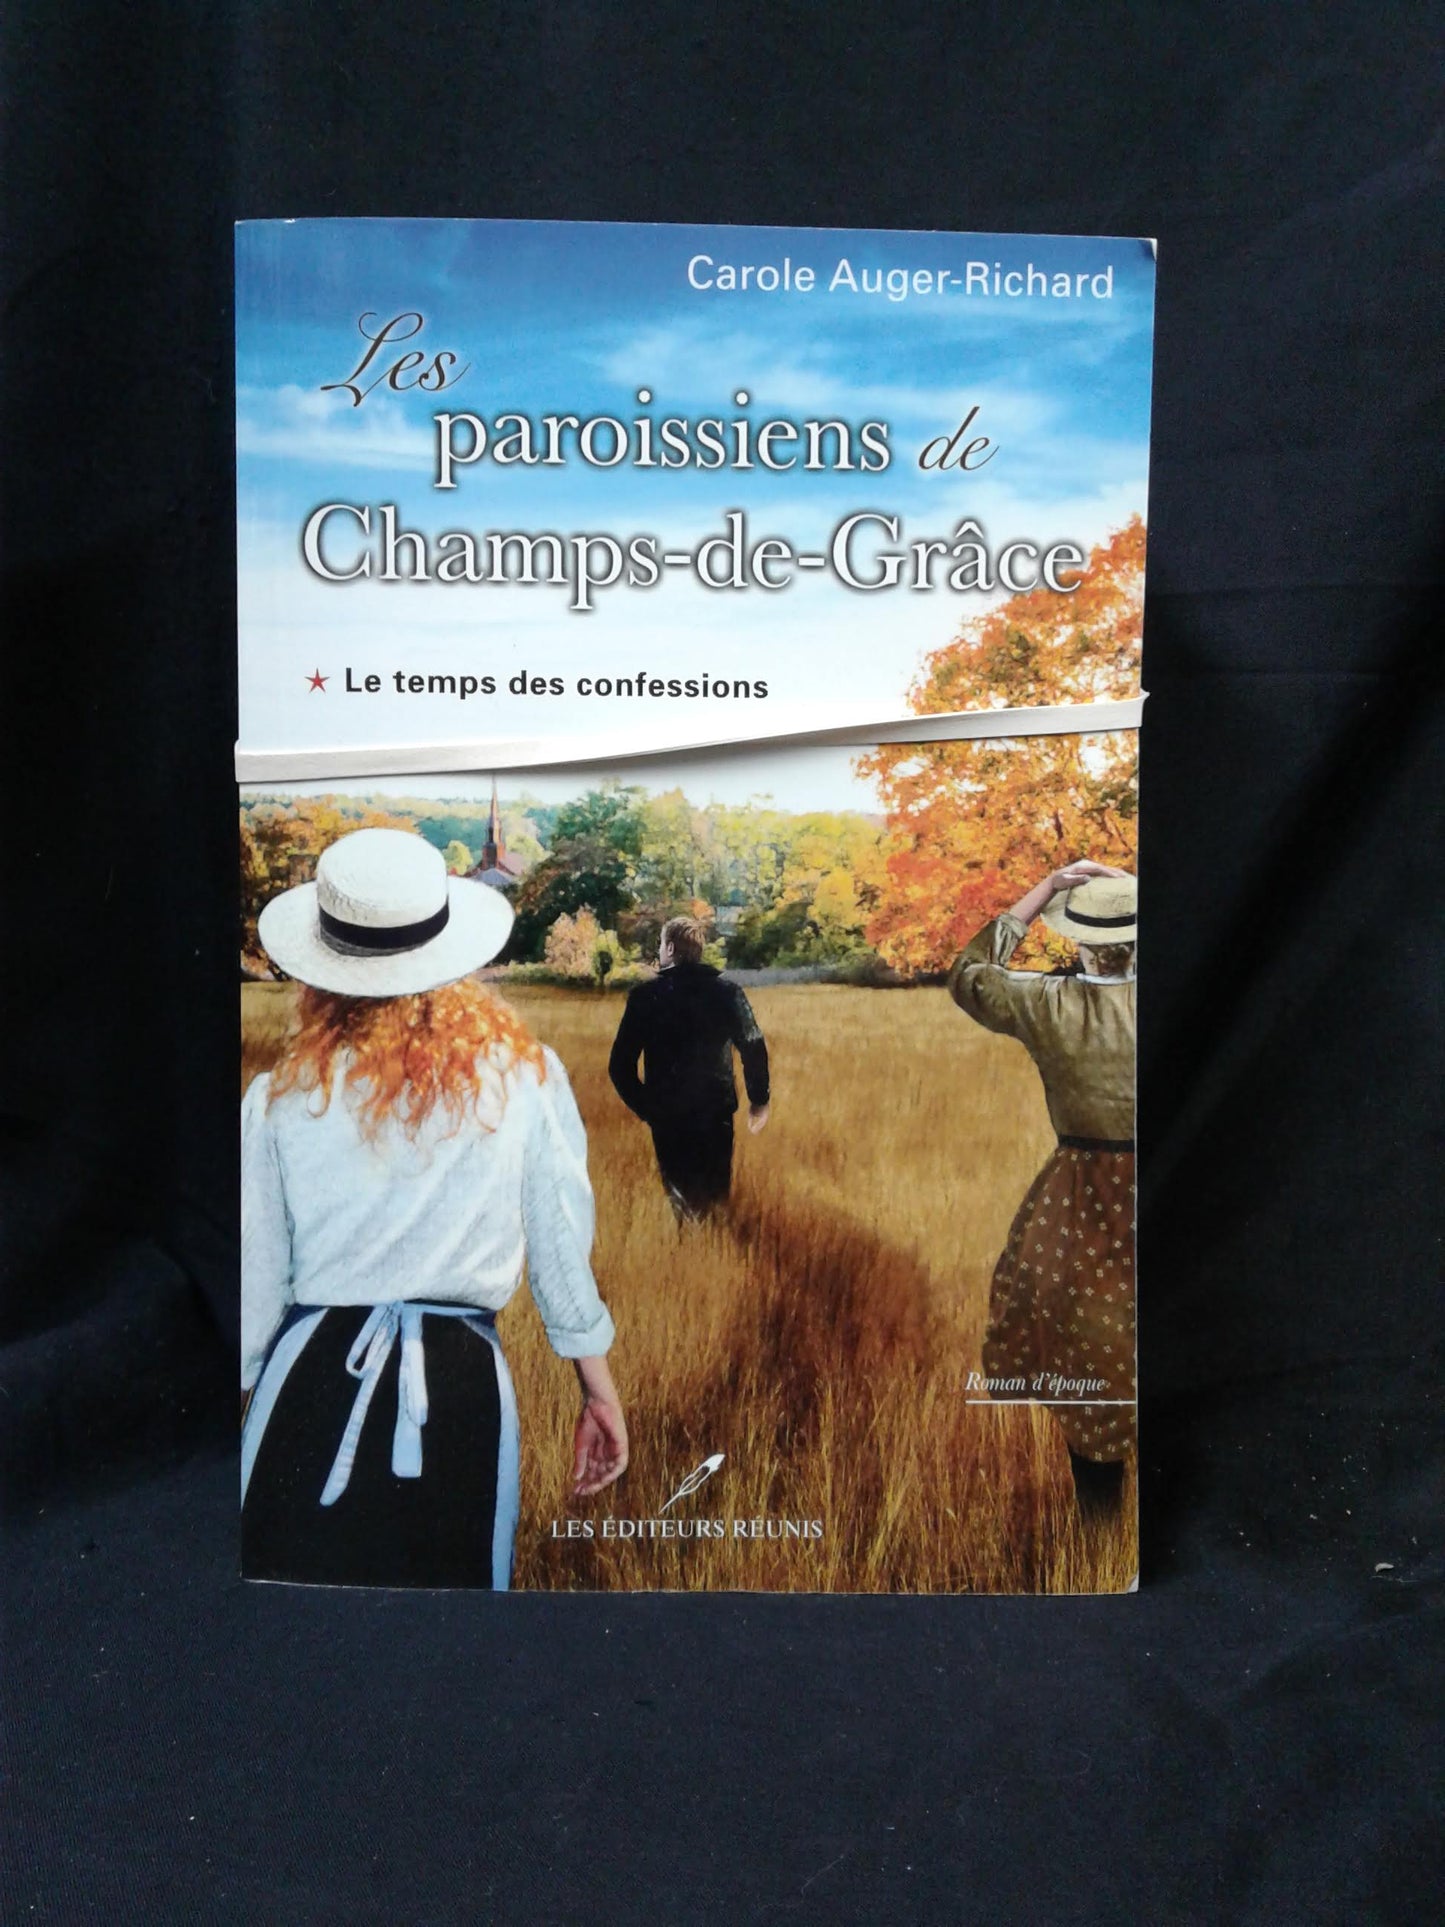 Les paroissiens de Champs-de-Grâce 3 tomes